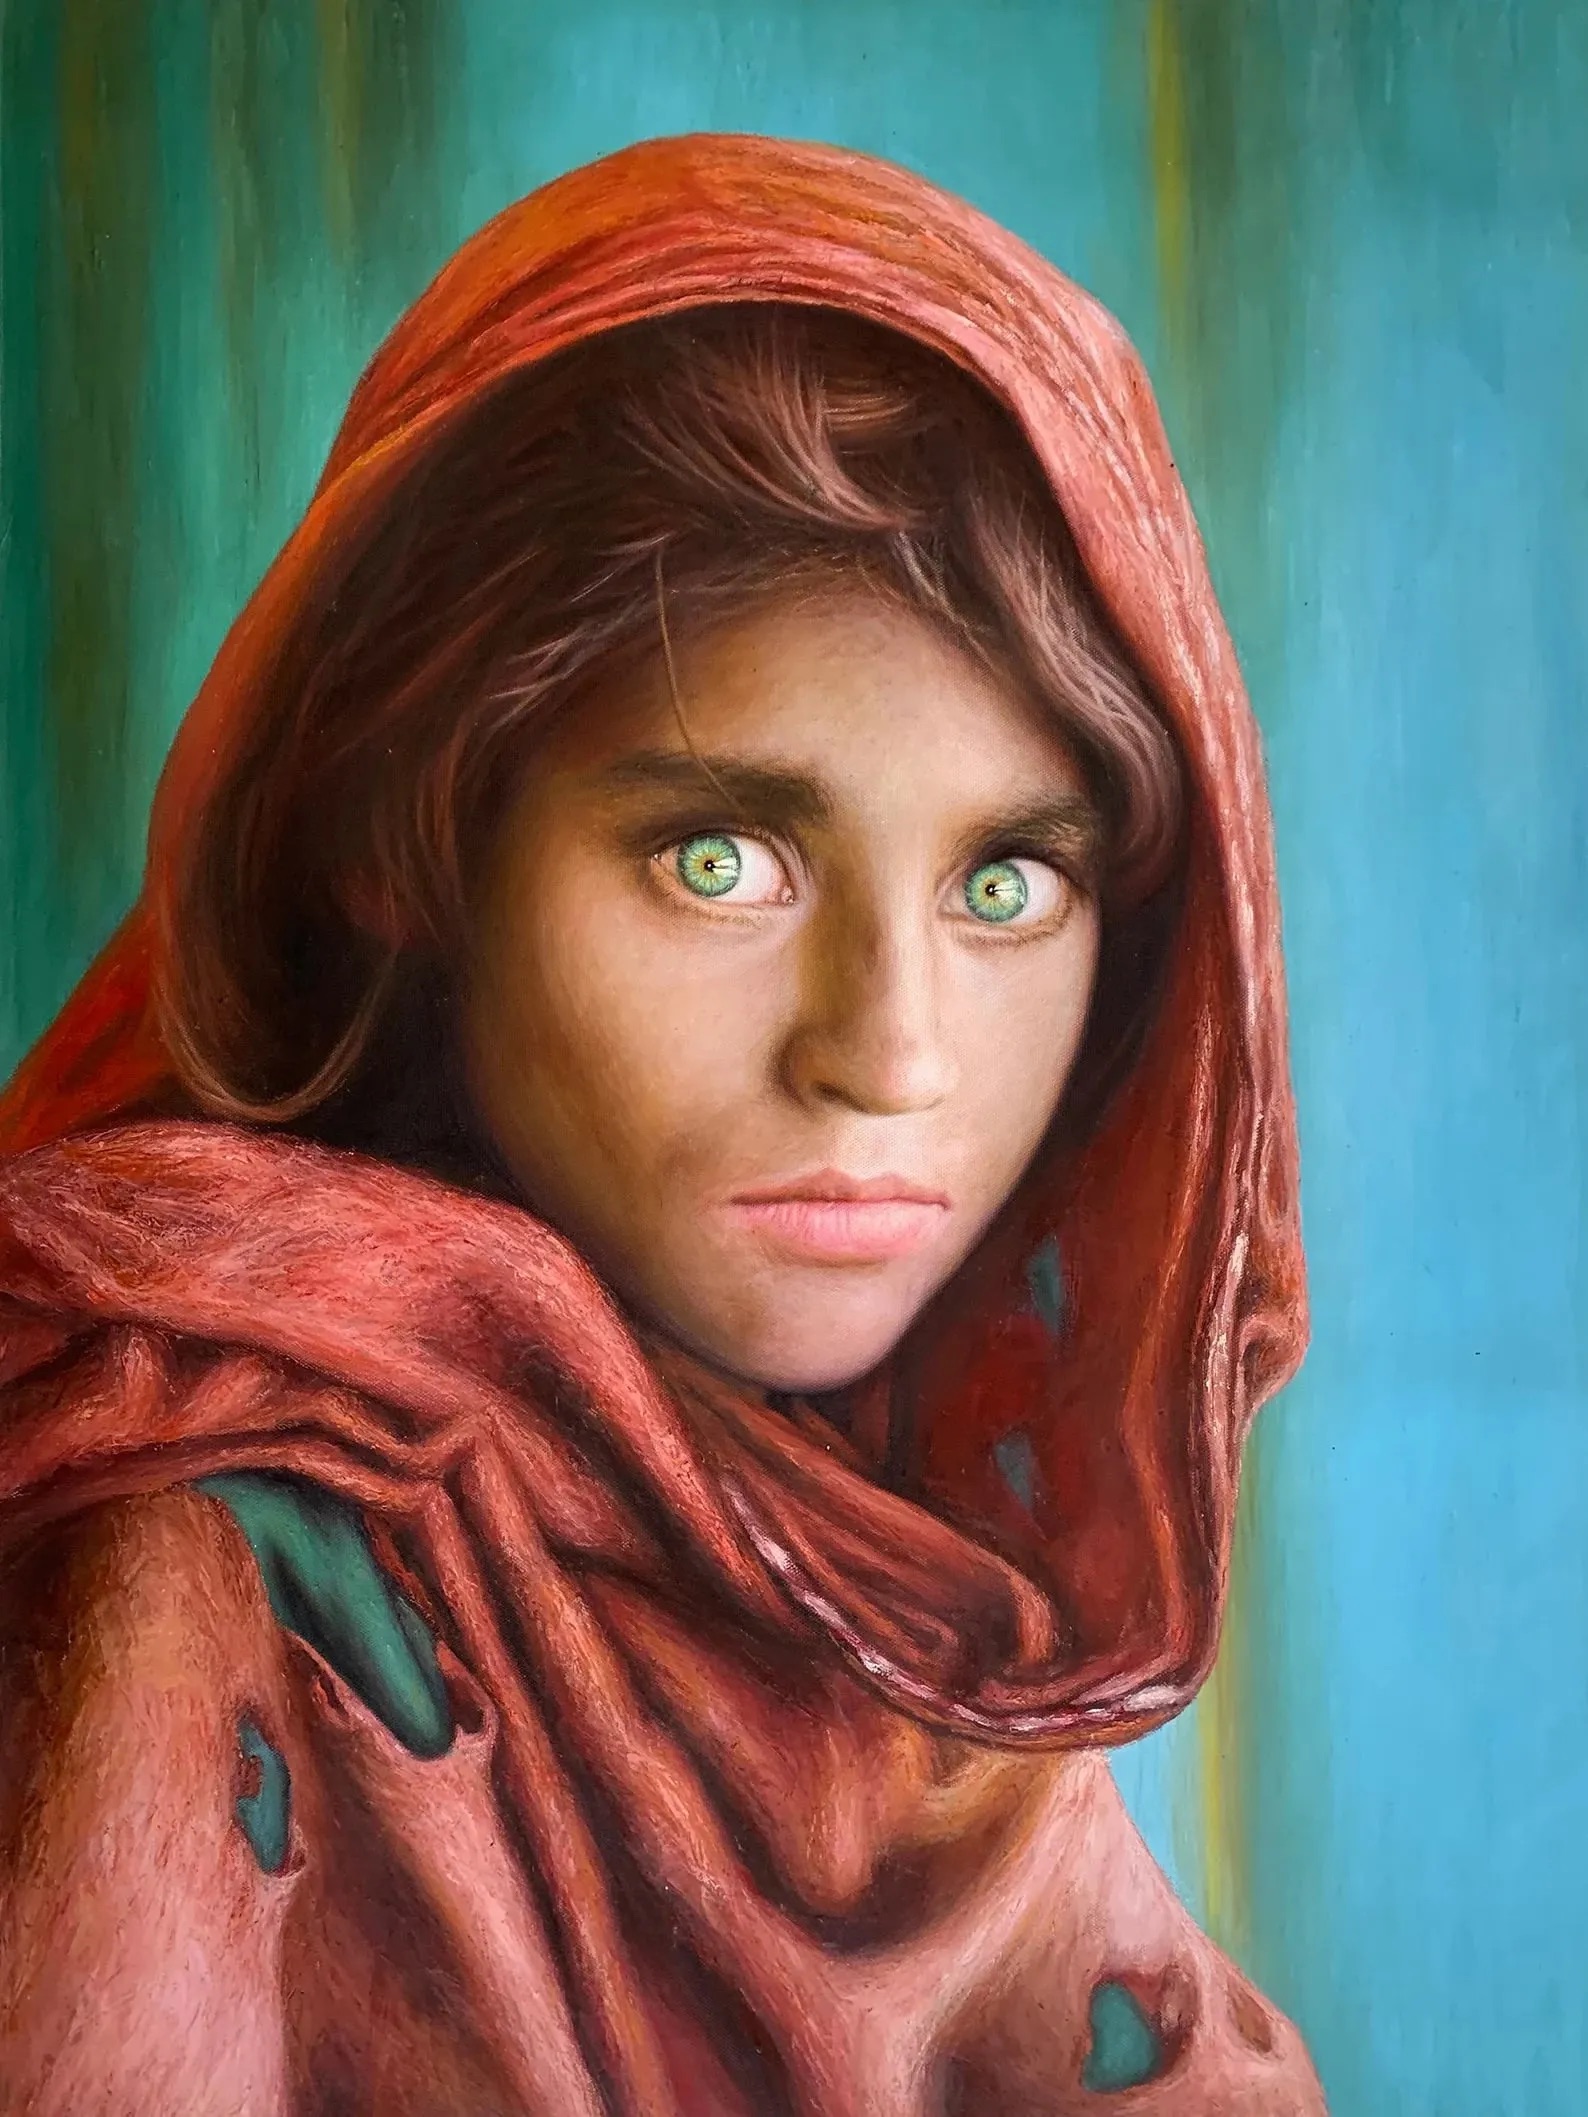 Steve McCurry "Afghan Girl" Oil Painting